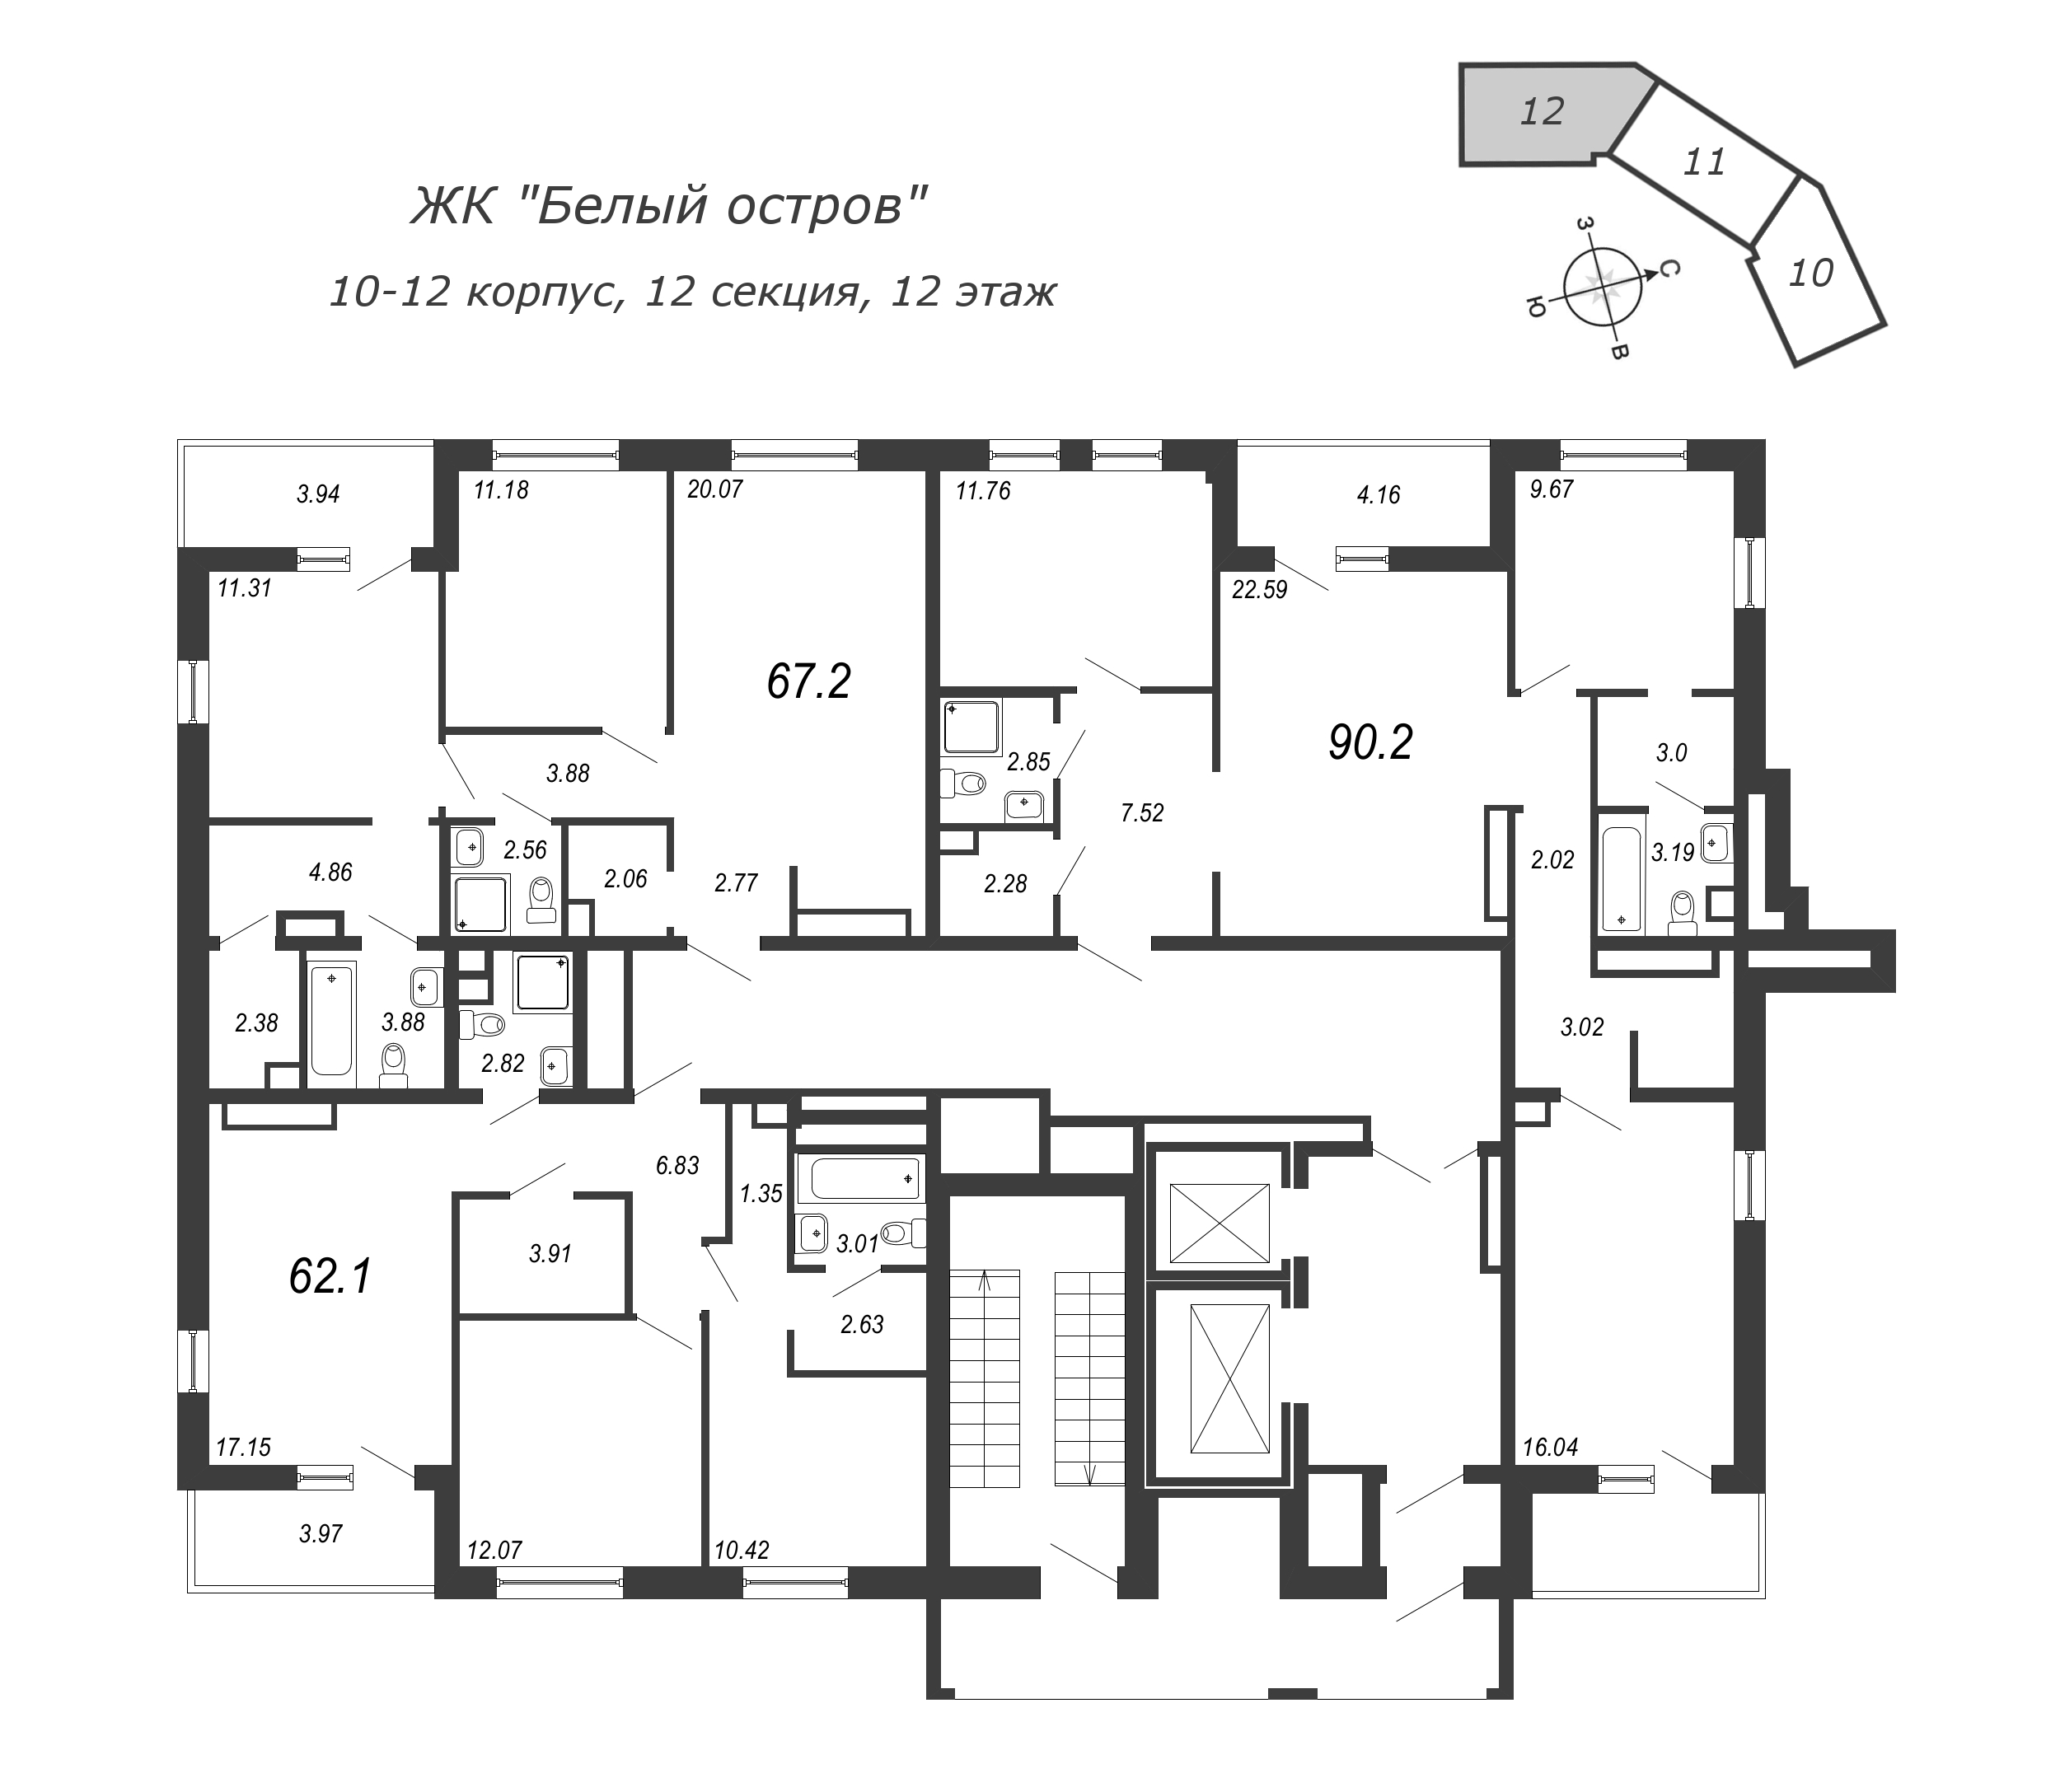 4-комнатная (Евро) квартира, 90.8 м² в ЖК "Белый остров" - планировка этажа